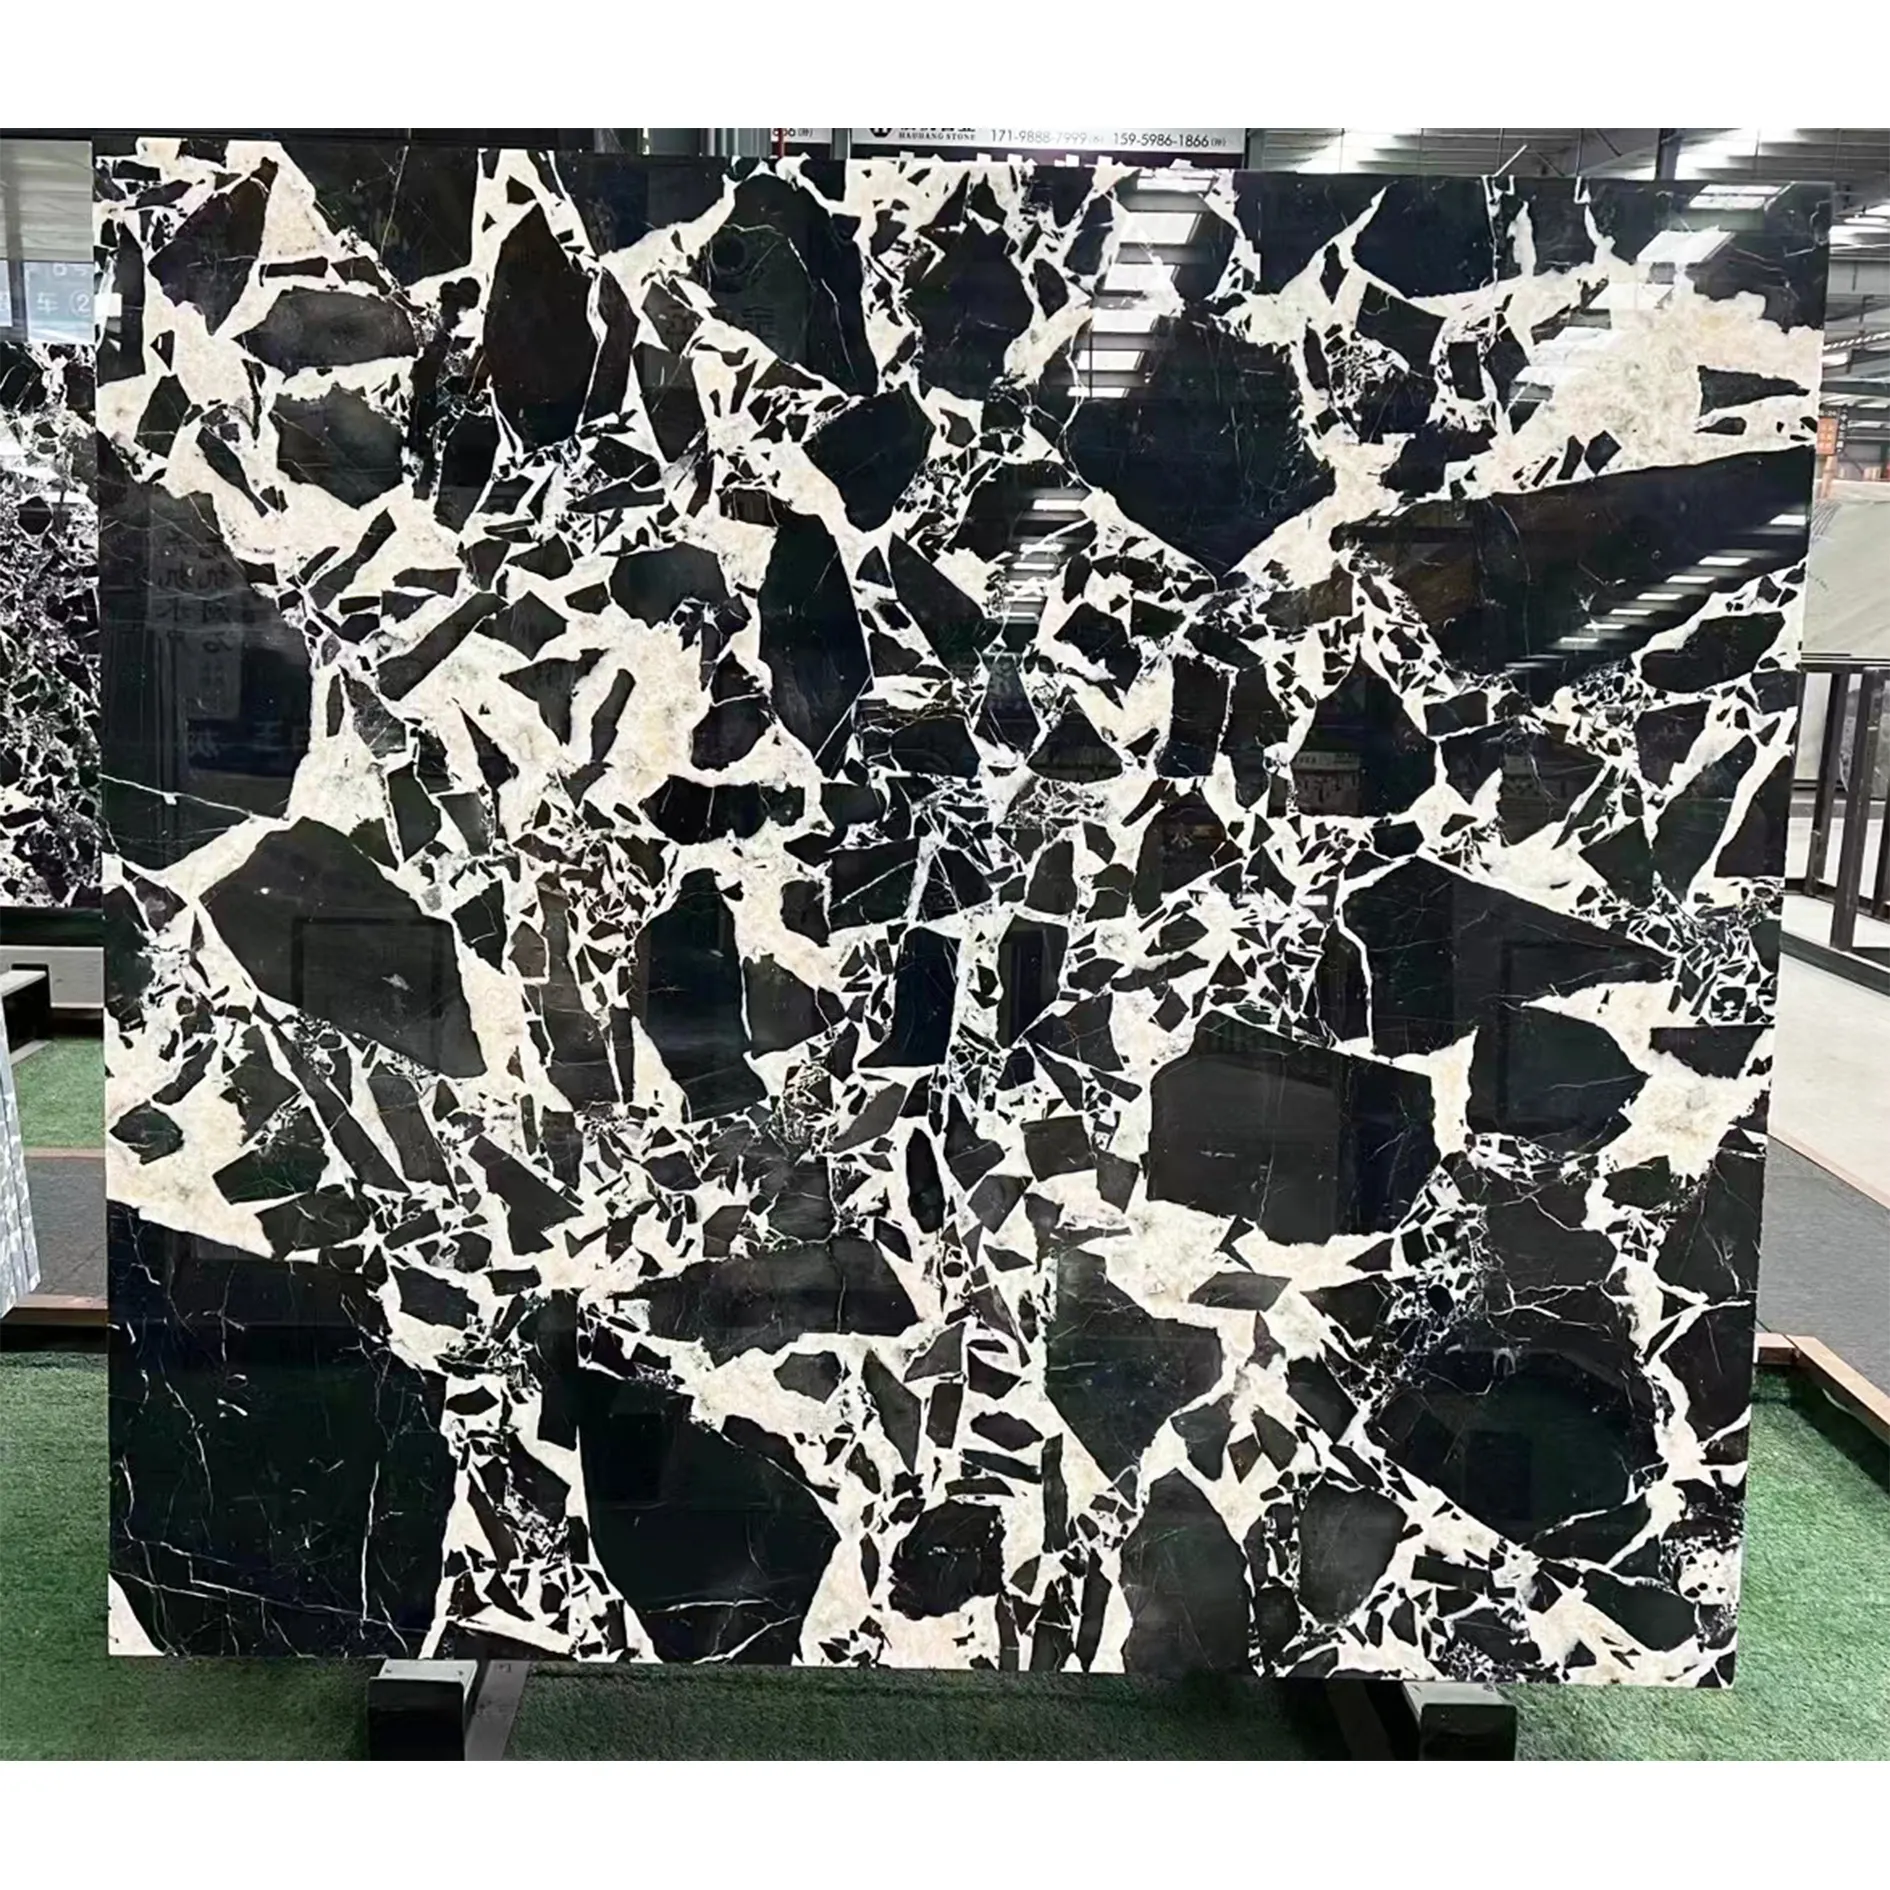 Bulgari lastra di marmo nero Grand Antique 3/4 ''Kitchen Island controsoffitto bagno Vanity controsoffitto tavolo da pranzo in marmo nero